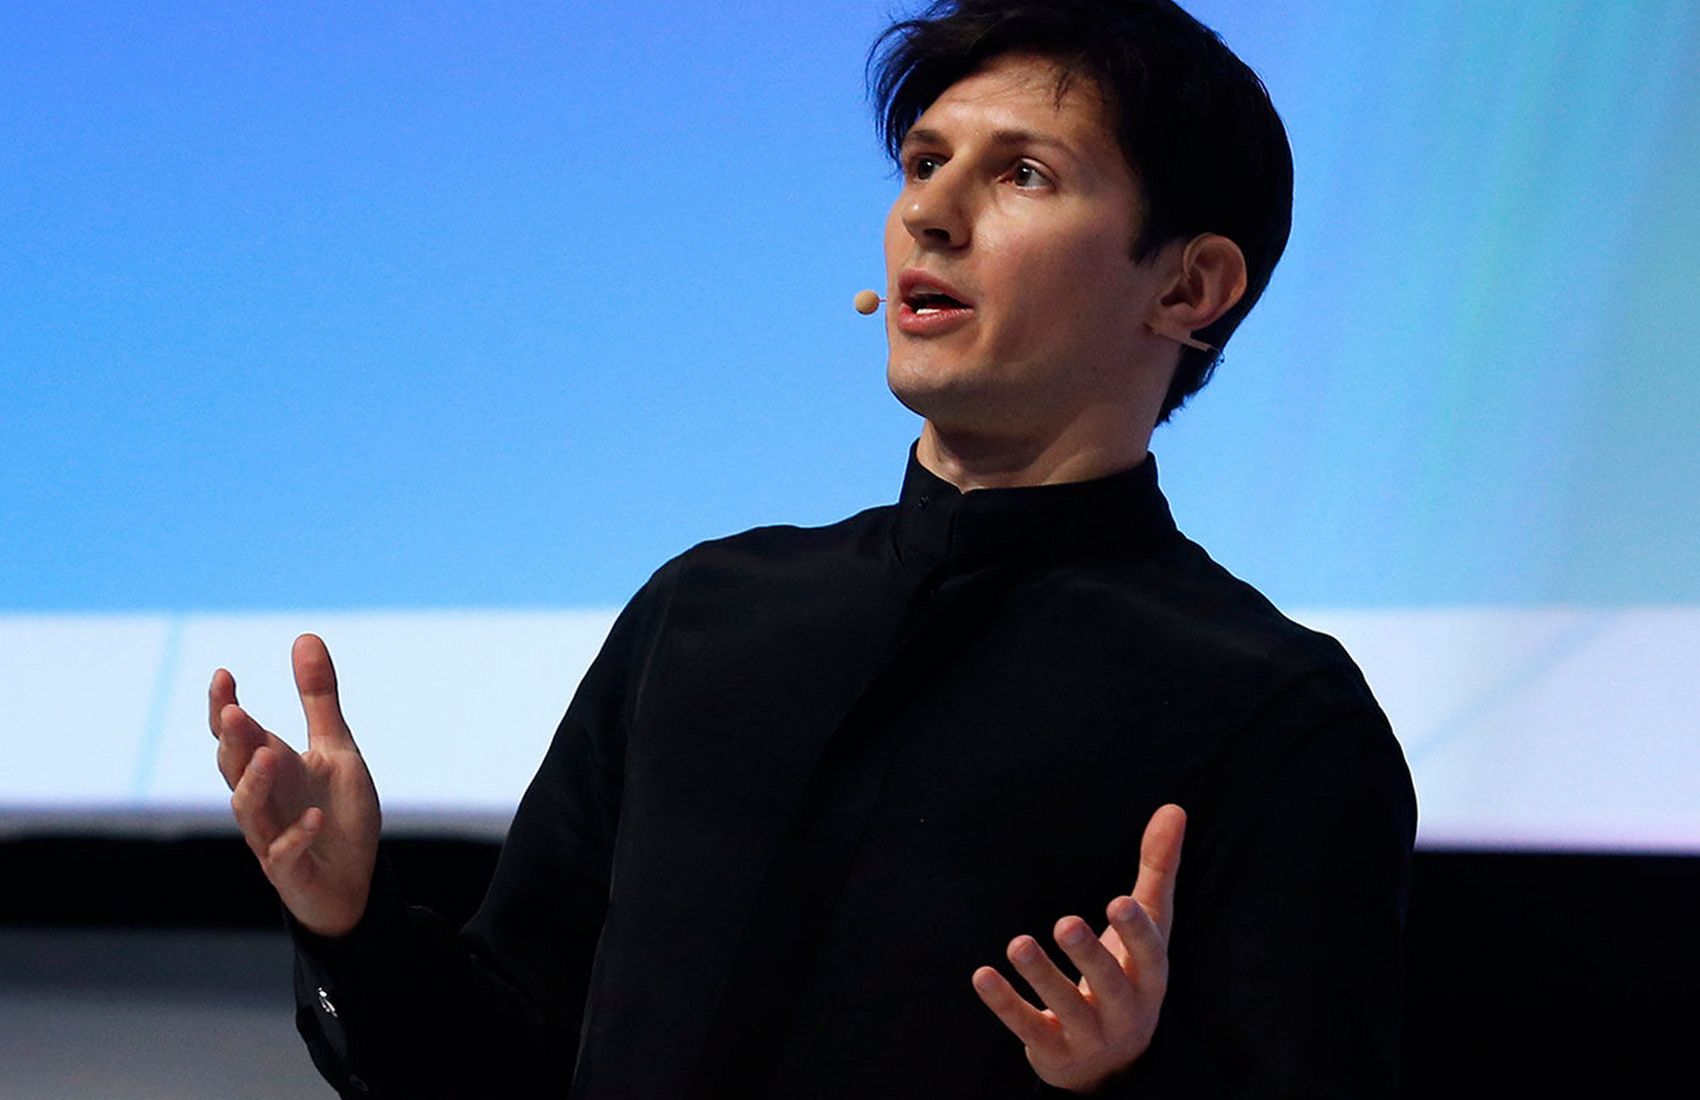 Павел Дуров: я рано разбогател, однако меня это никогда не радовало